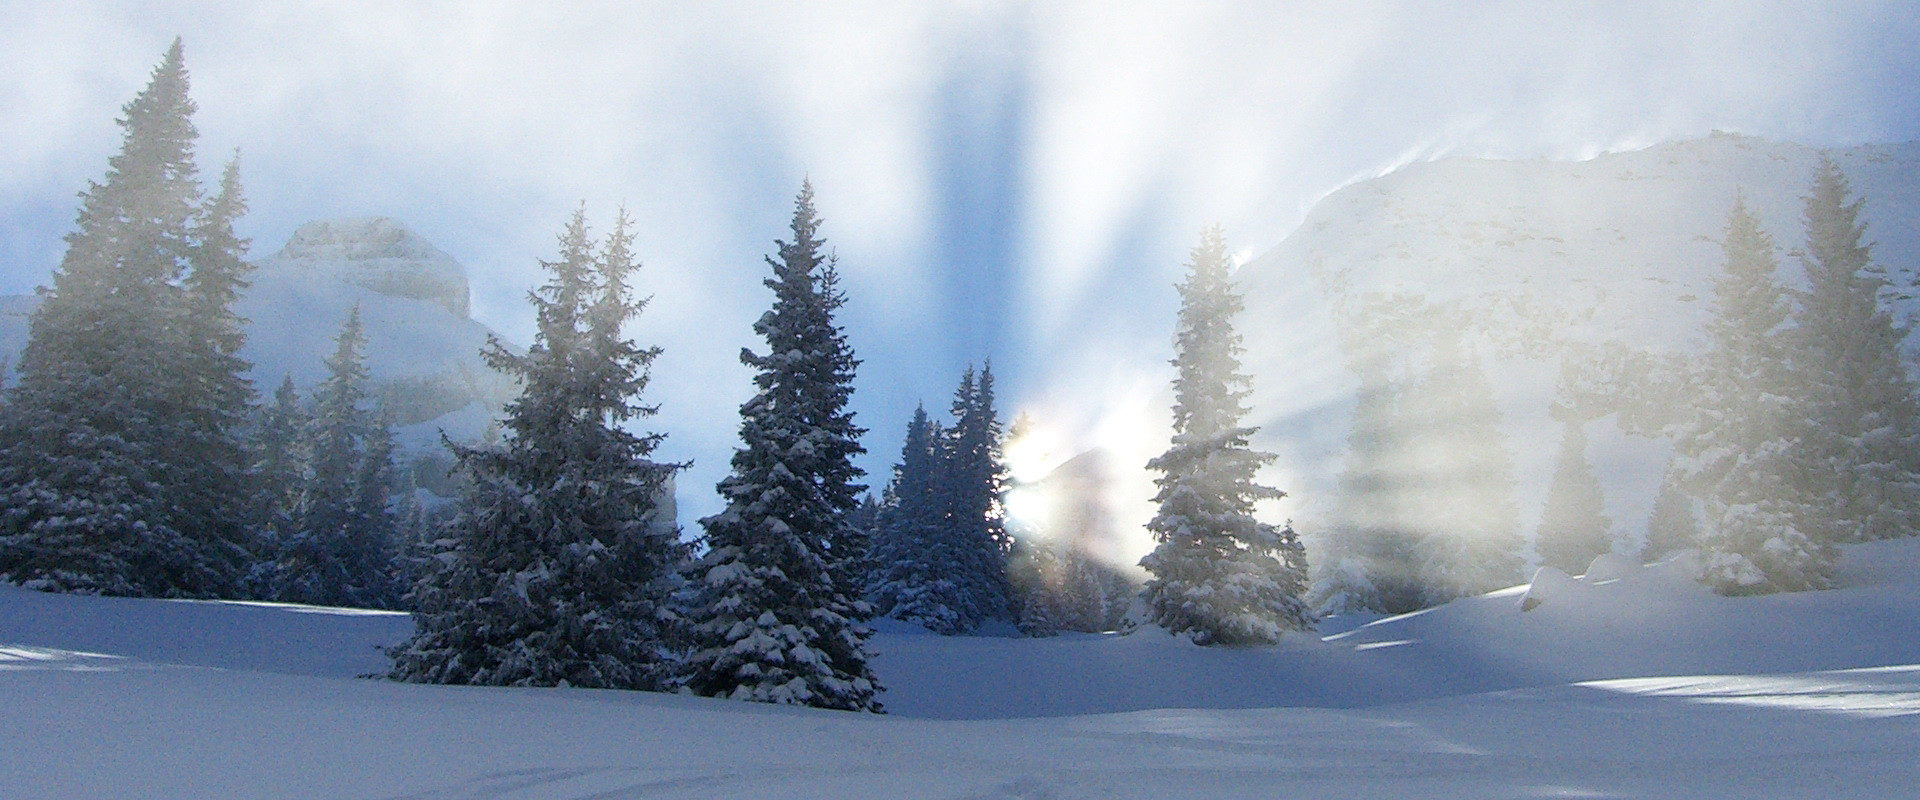 Hansjörg Lindenthaler fotografiert ein Licht-Schattenspiel mit winterlichen Bäumen in Sonnenstrahlen gebettet